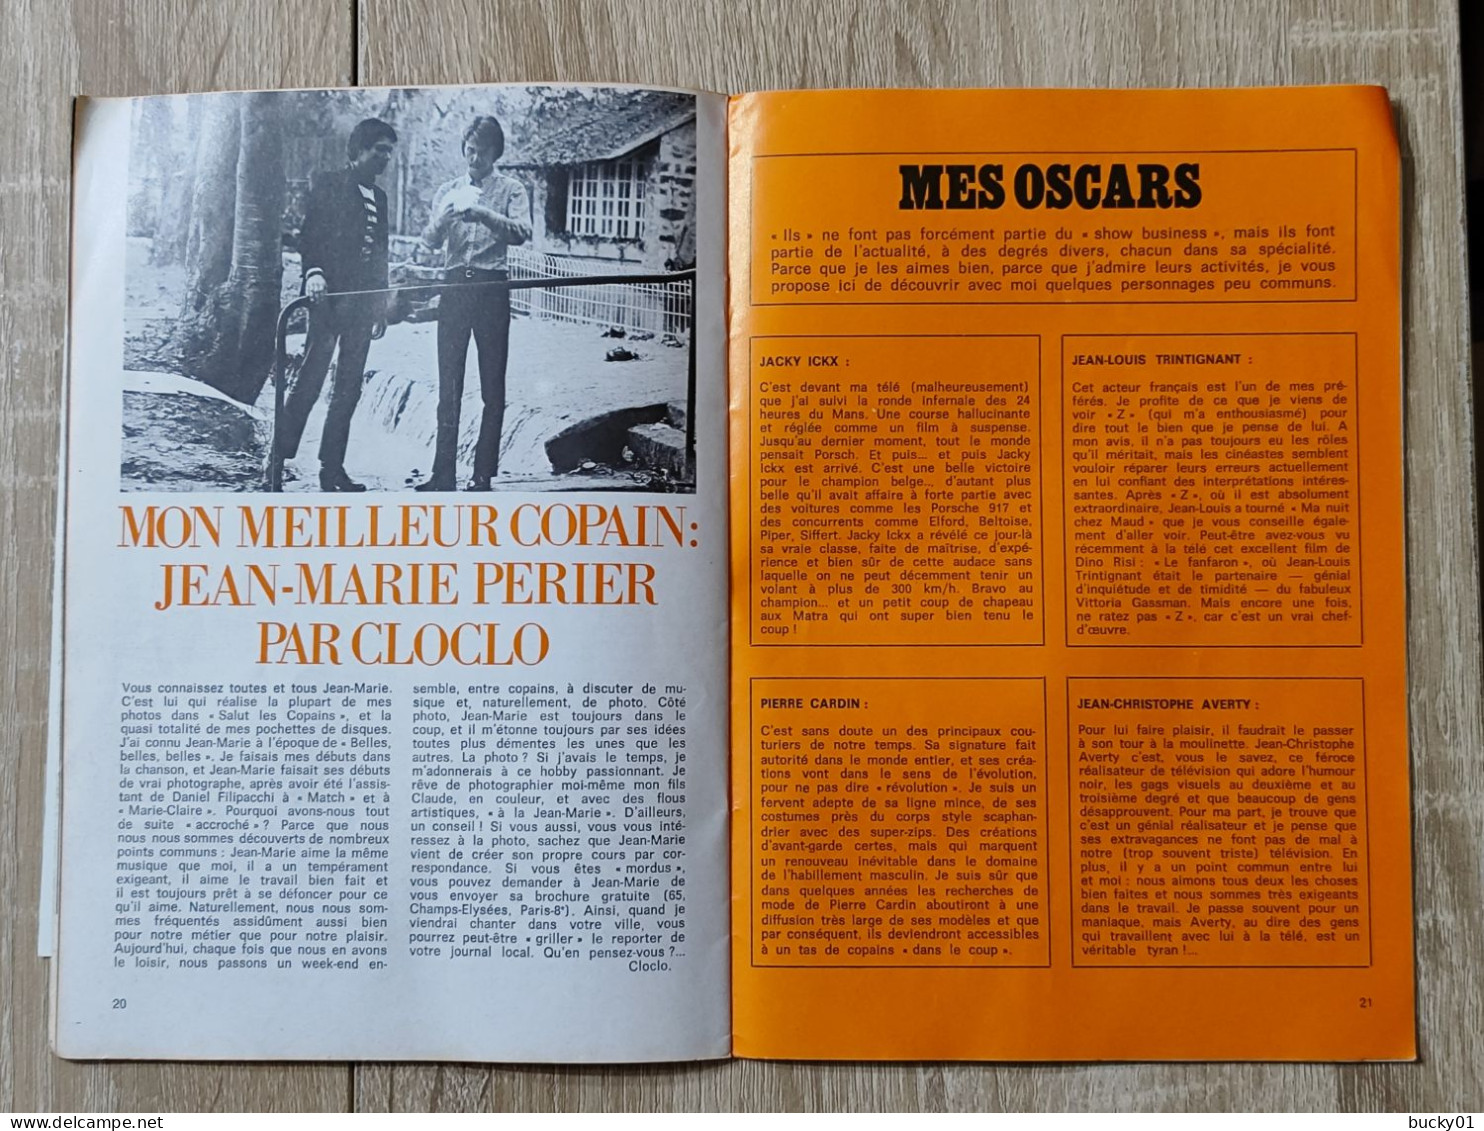 TRES RARE - FLECHE N°3 - LE JOURNAL DE CLAUDE FRANCOIS - 1969 - Musik